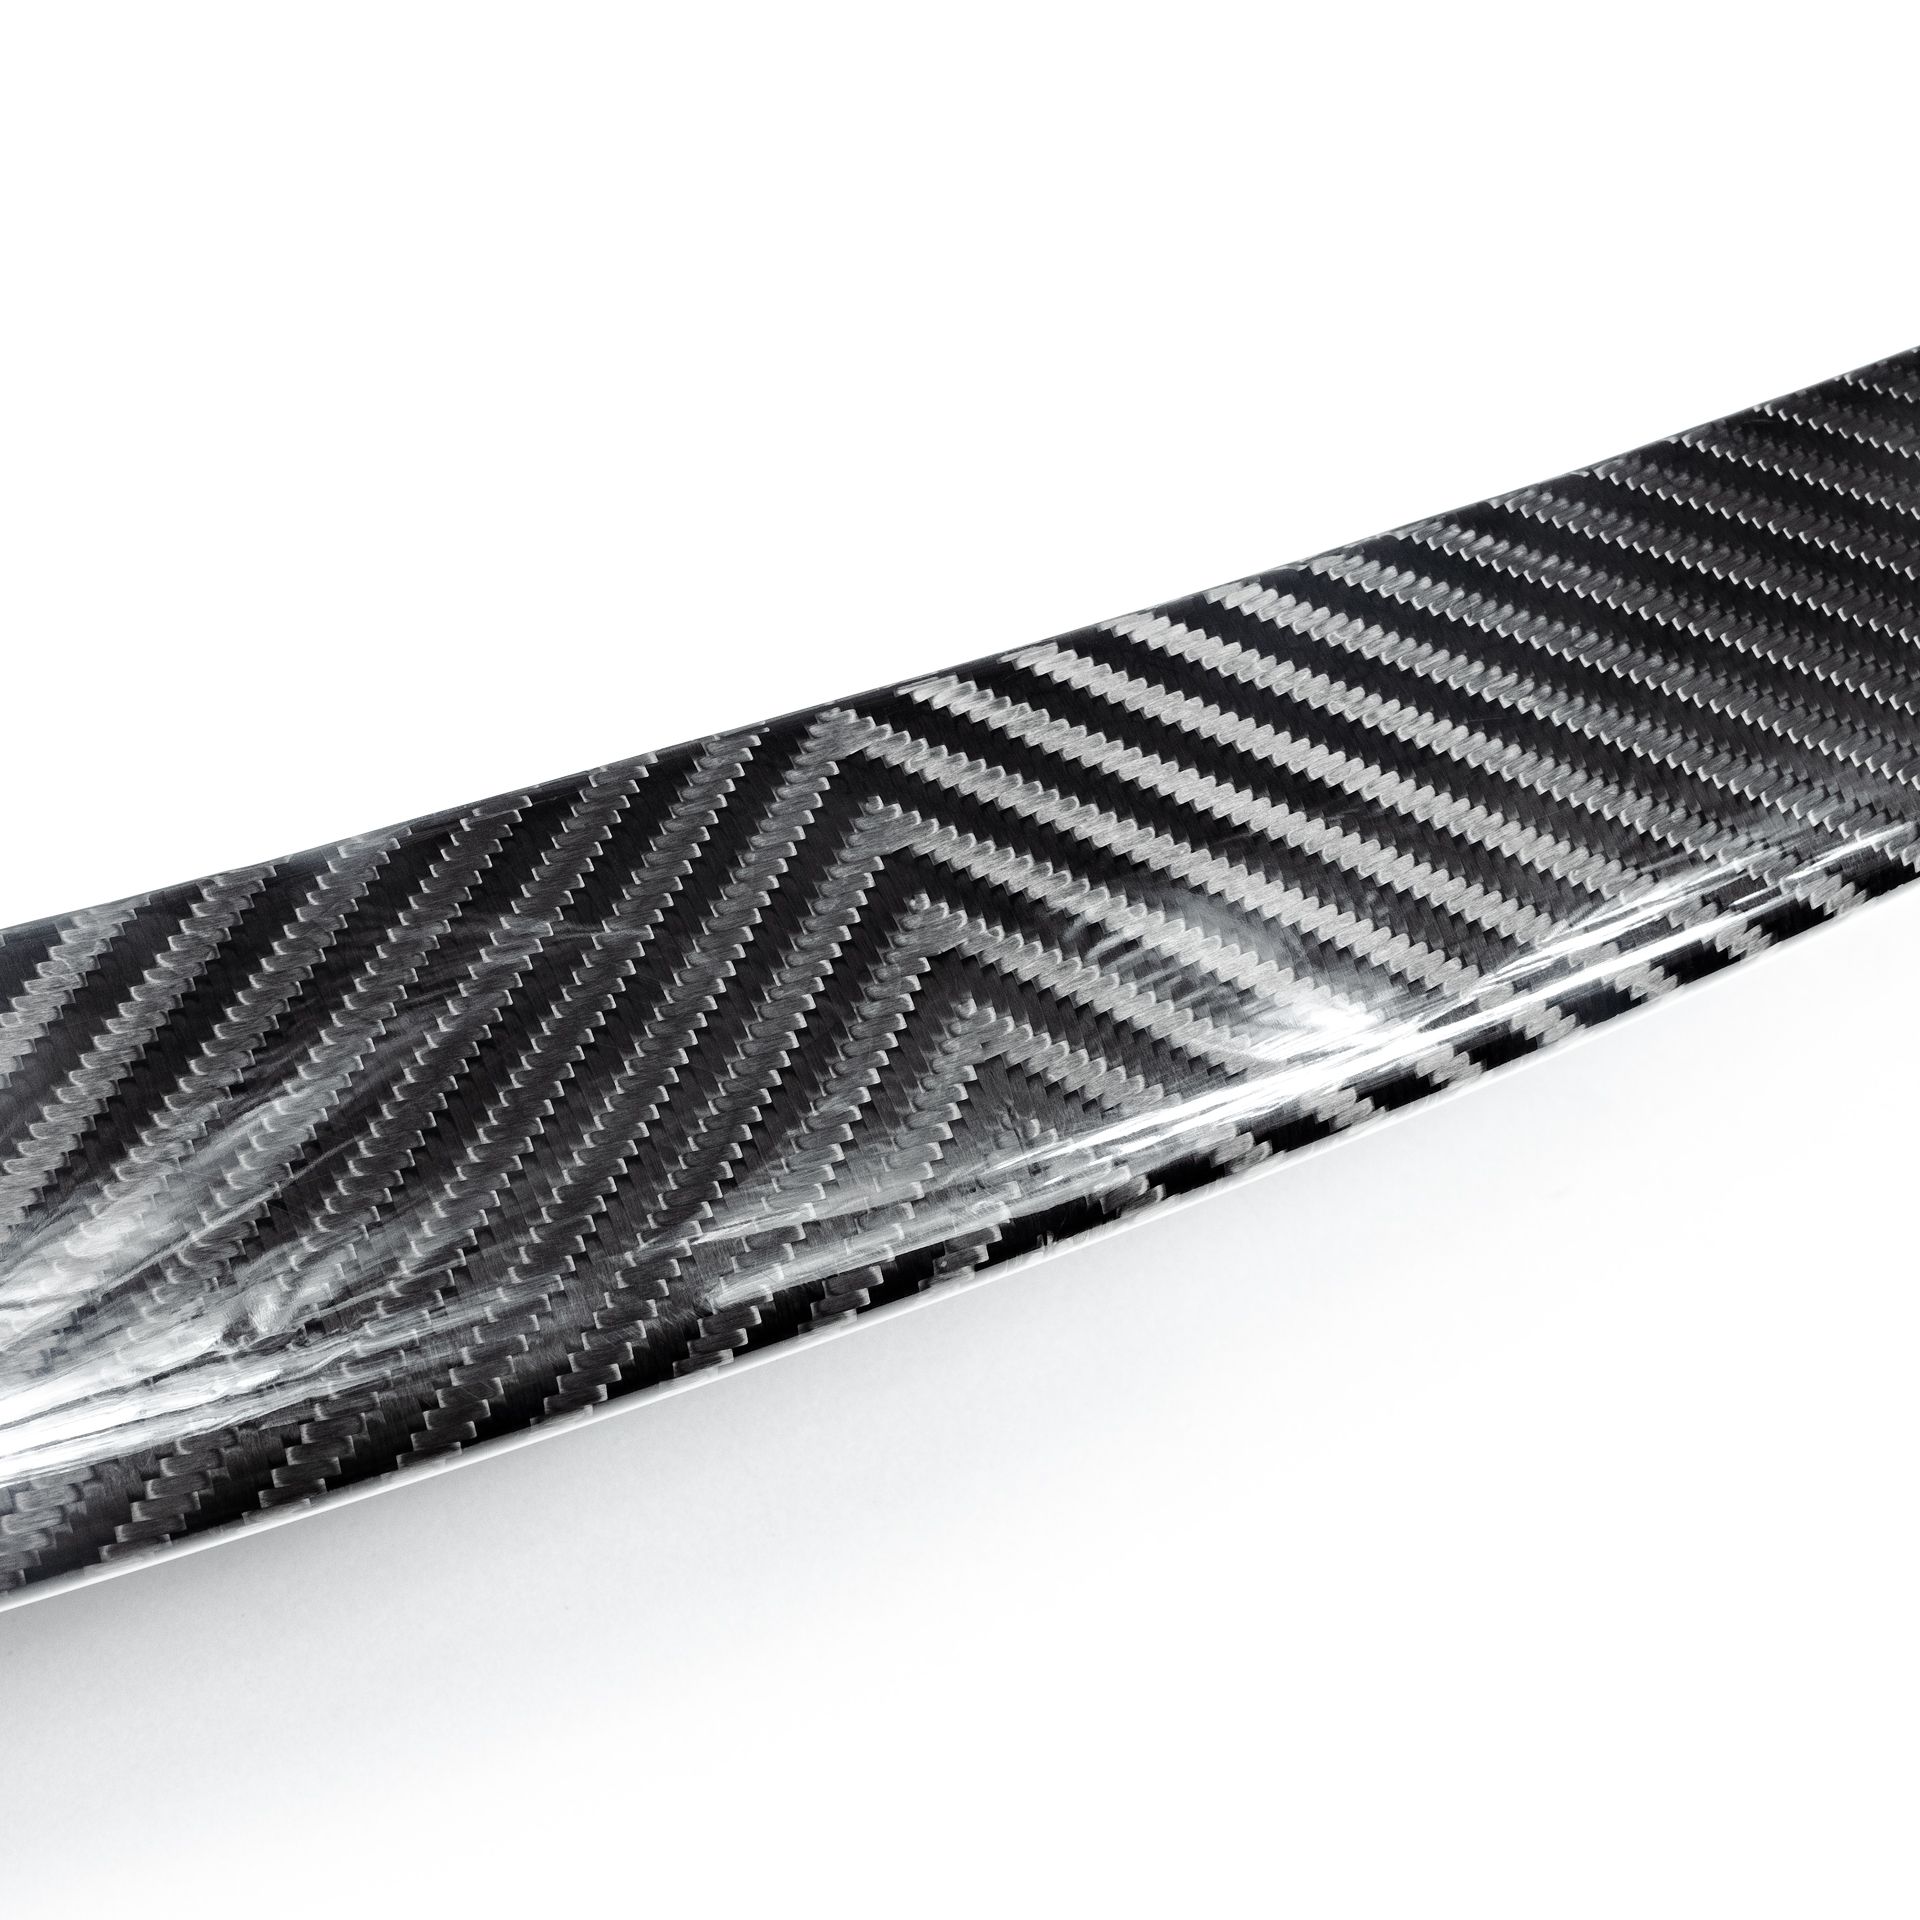 Koenigsegg Is Now Making Aftermarket Tesla Carbon Fiber Parts